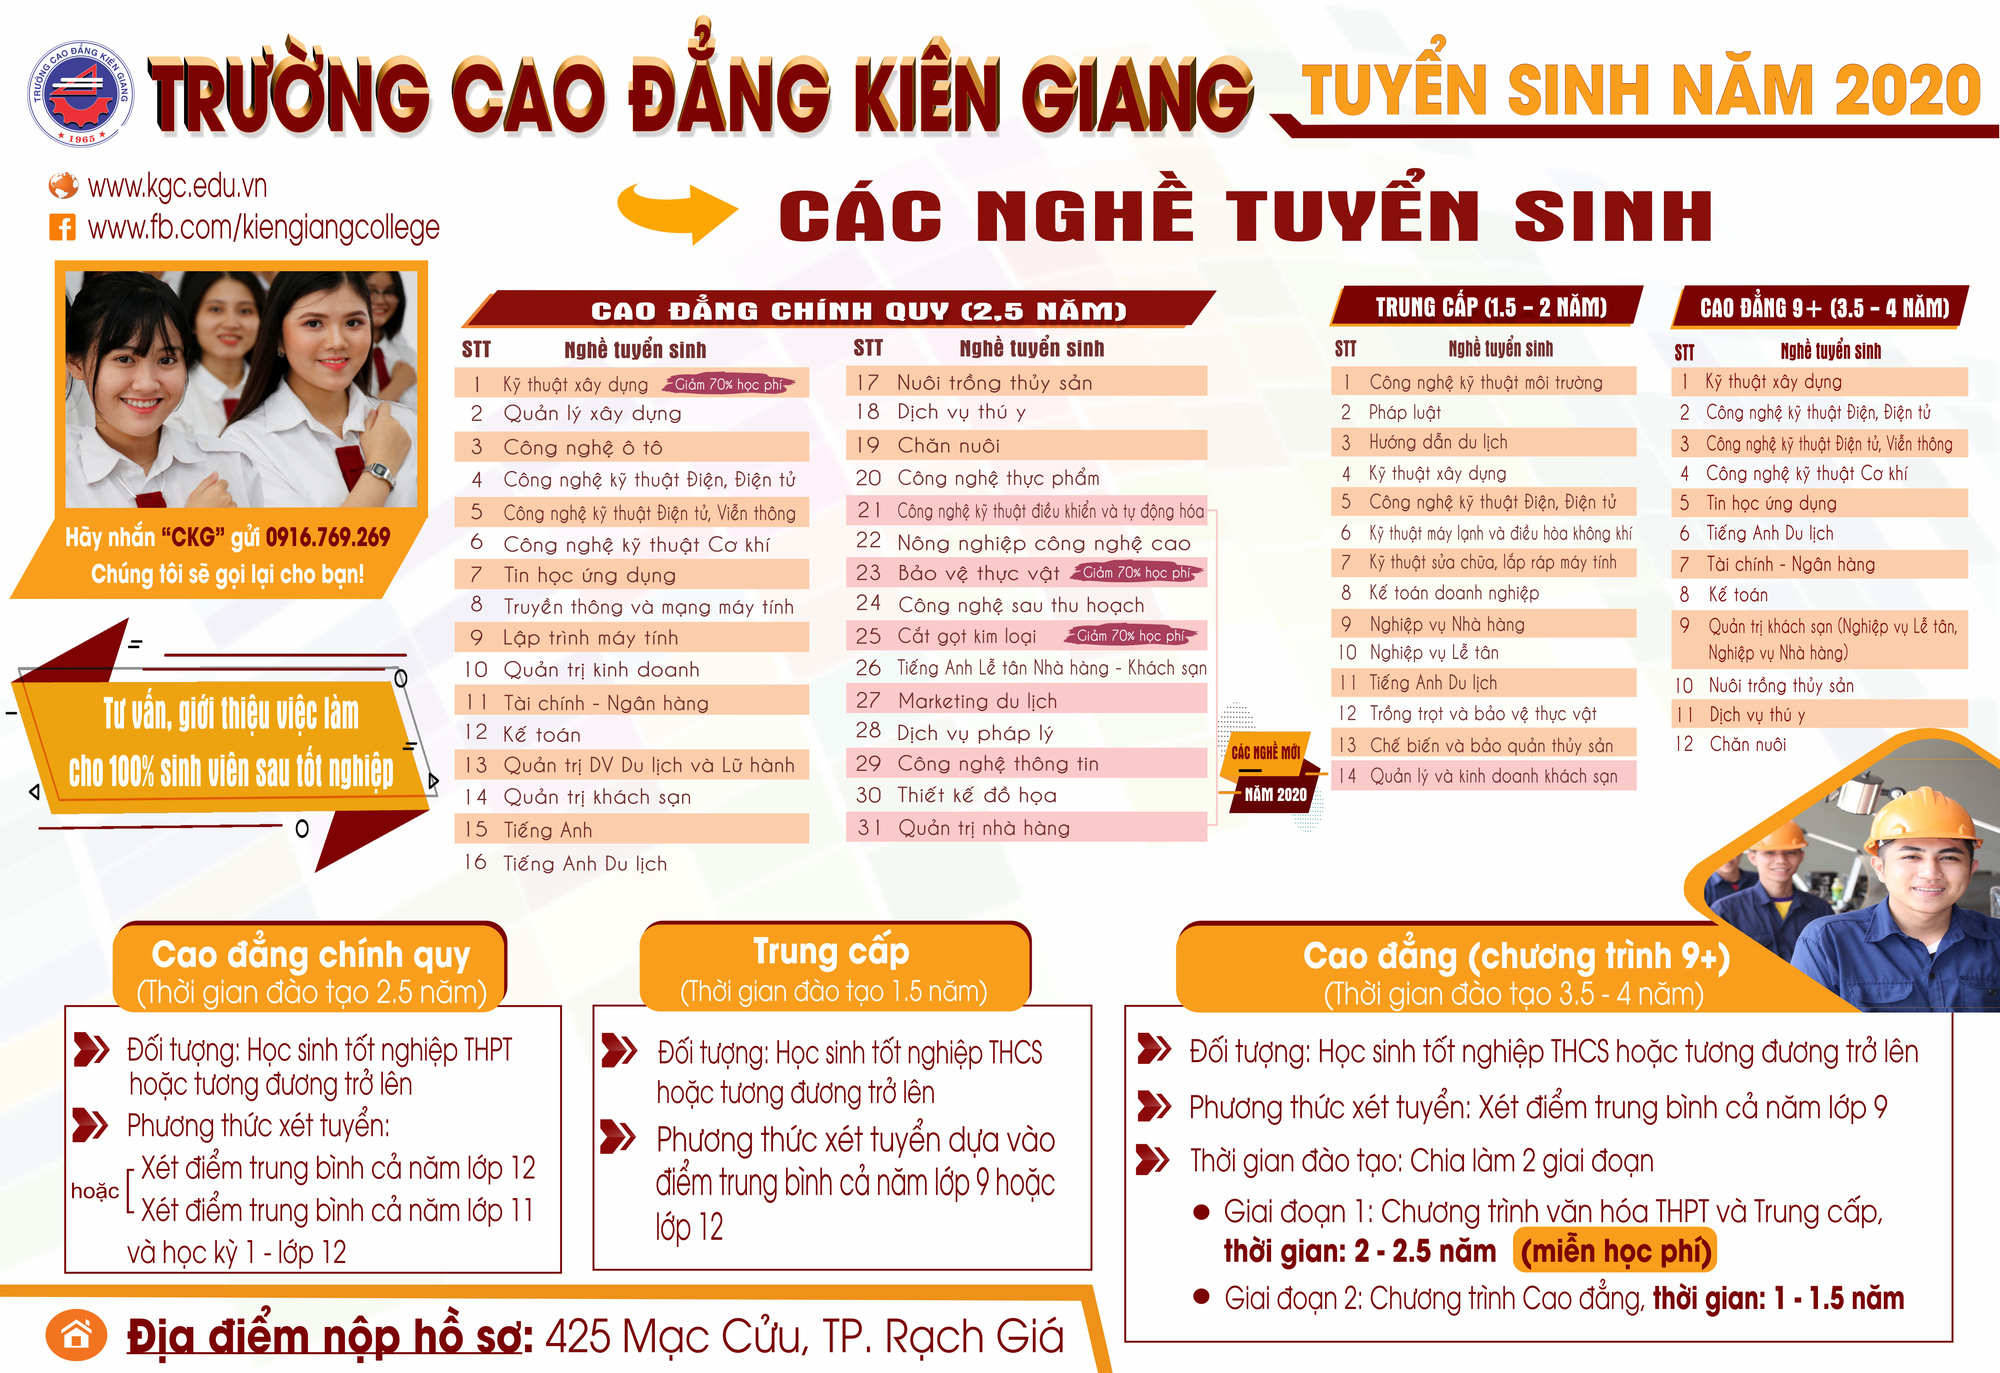 Trường cao đẳng Kiên Giang: Những nét mới trong tuyển sinh 2020 tại KGC - Ảnh 2.